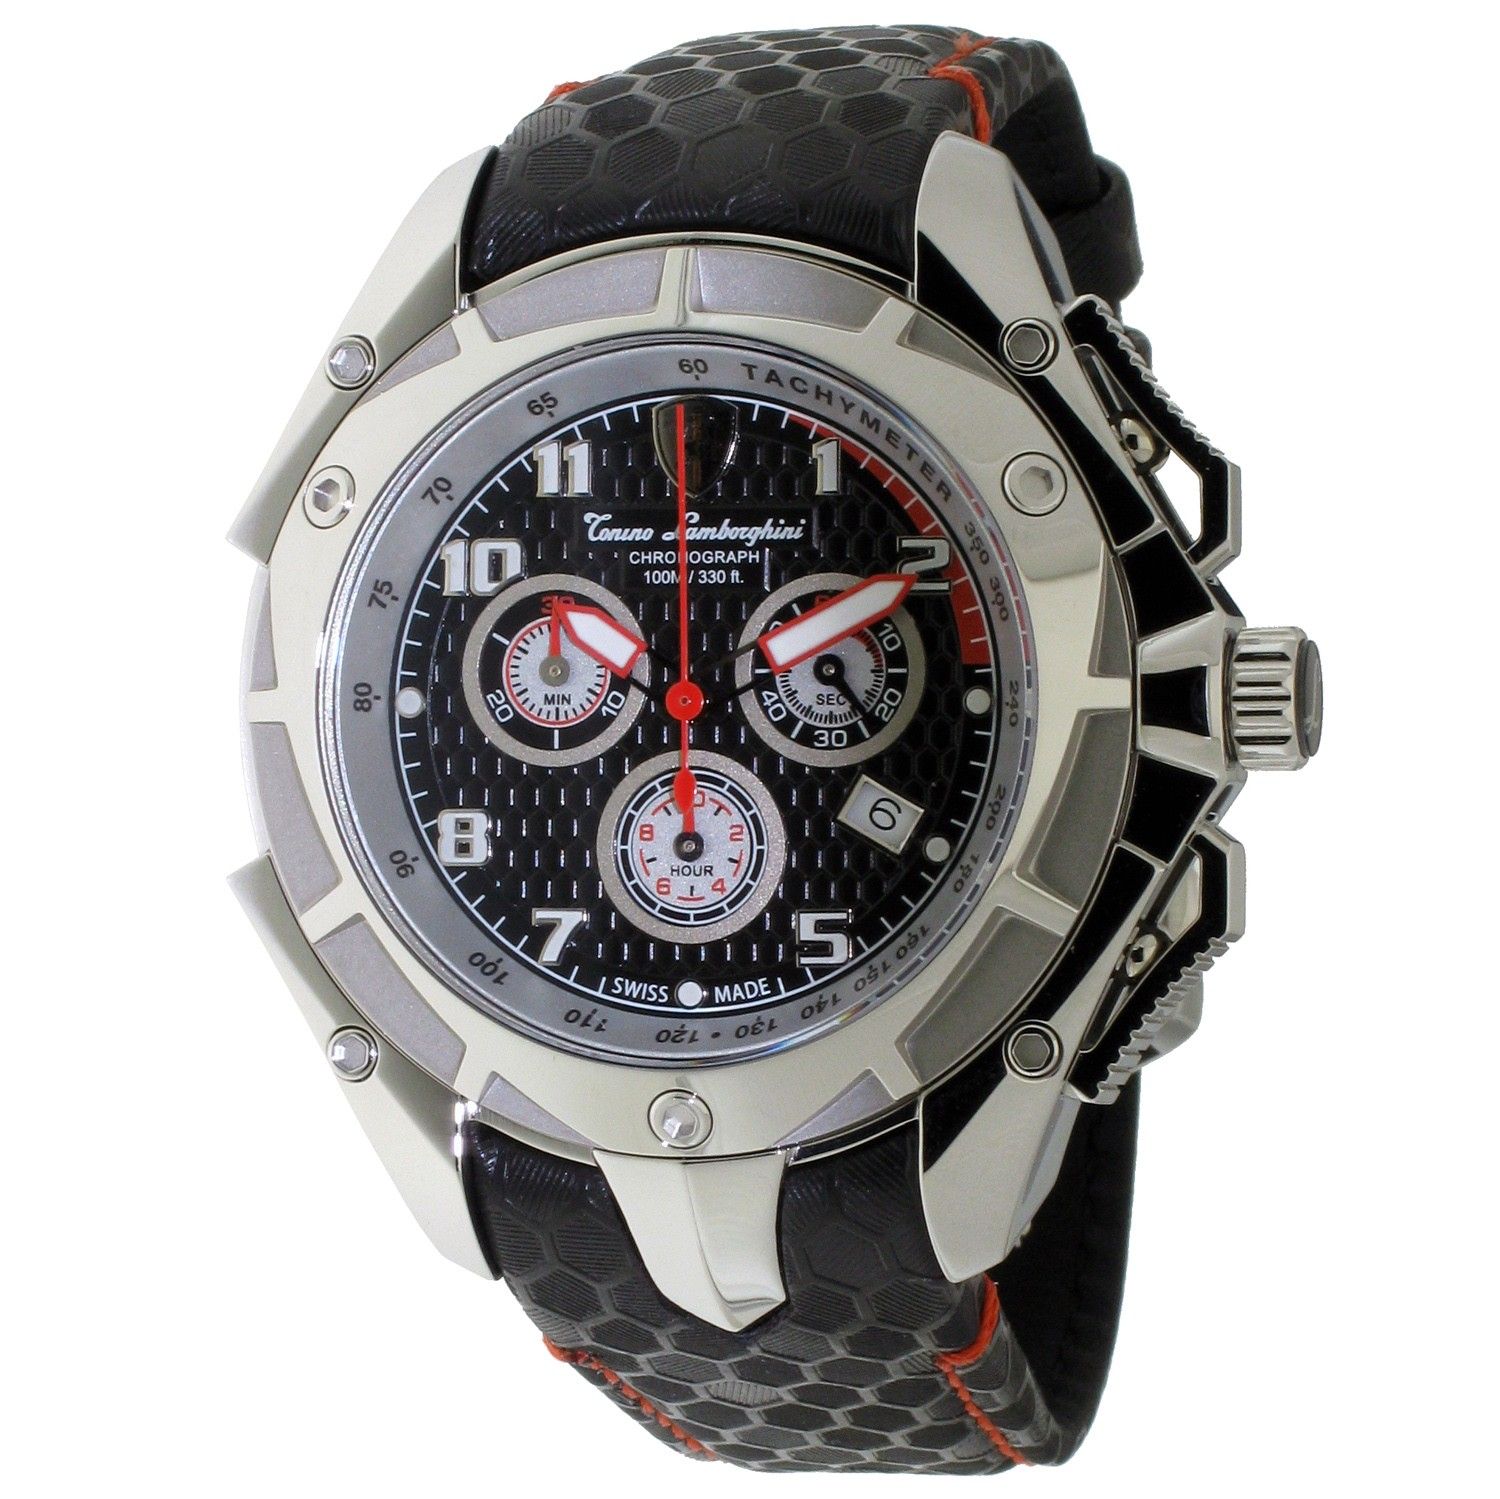 Tonino Lamborghini Watches - Buy Now